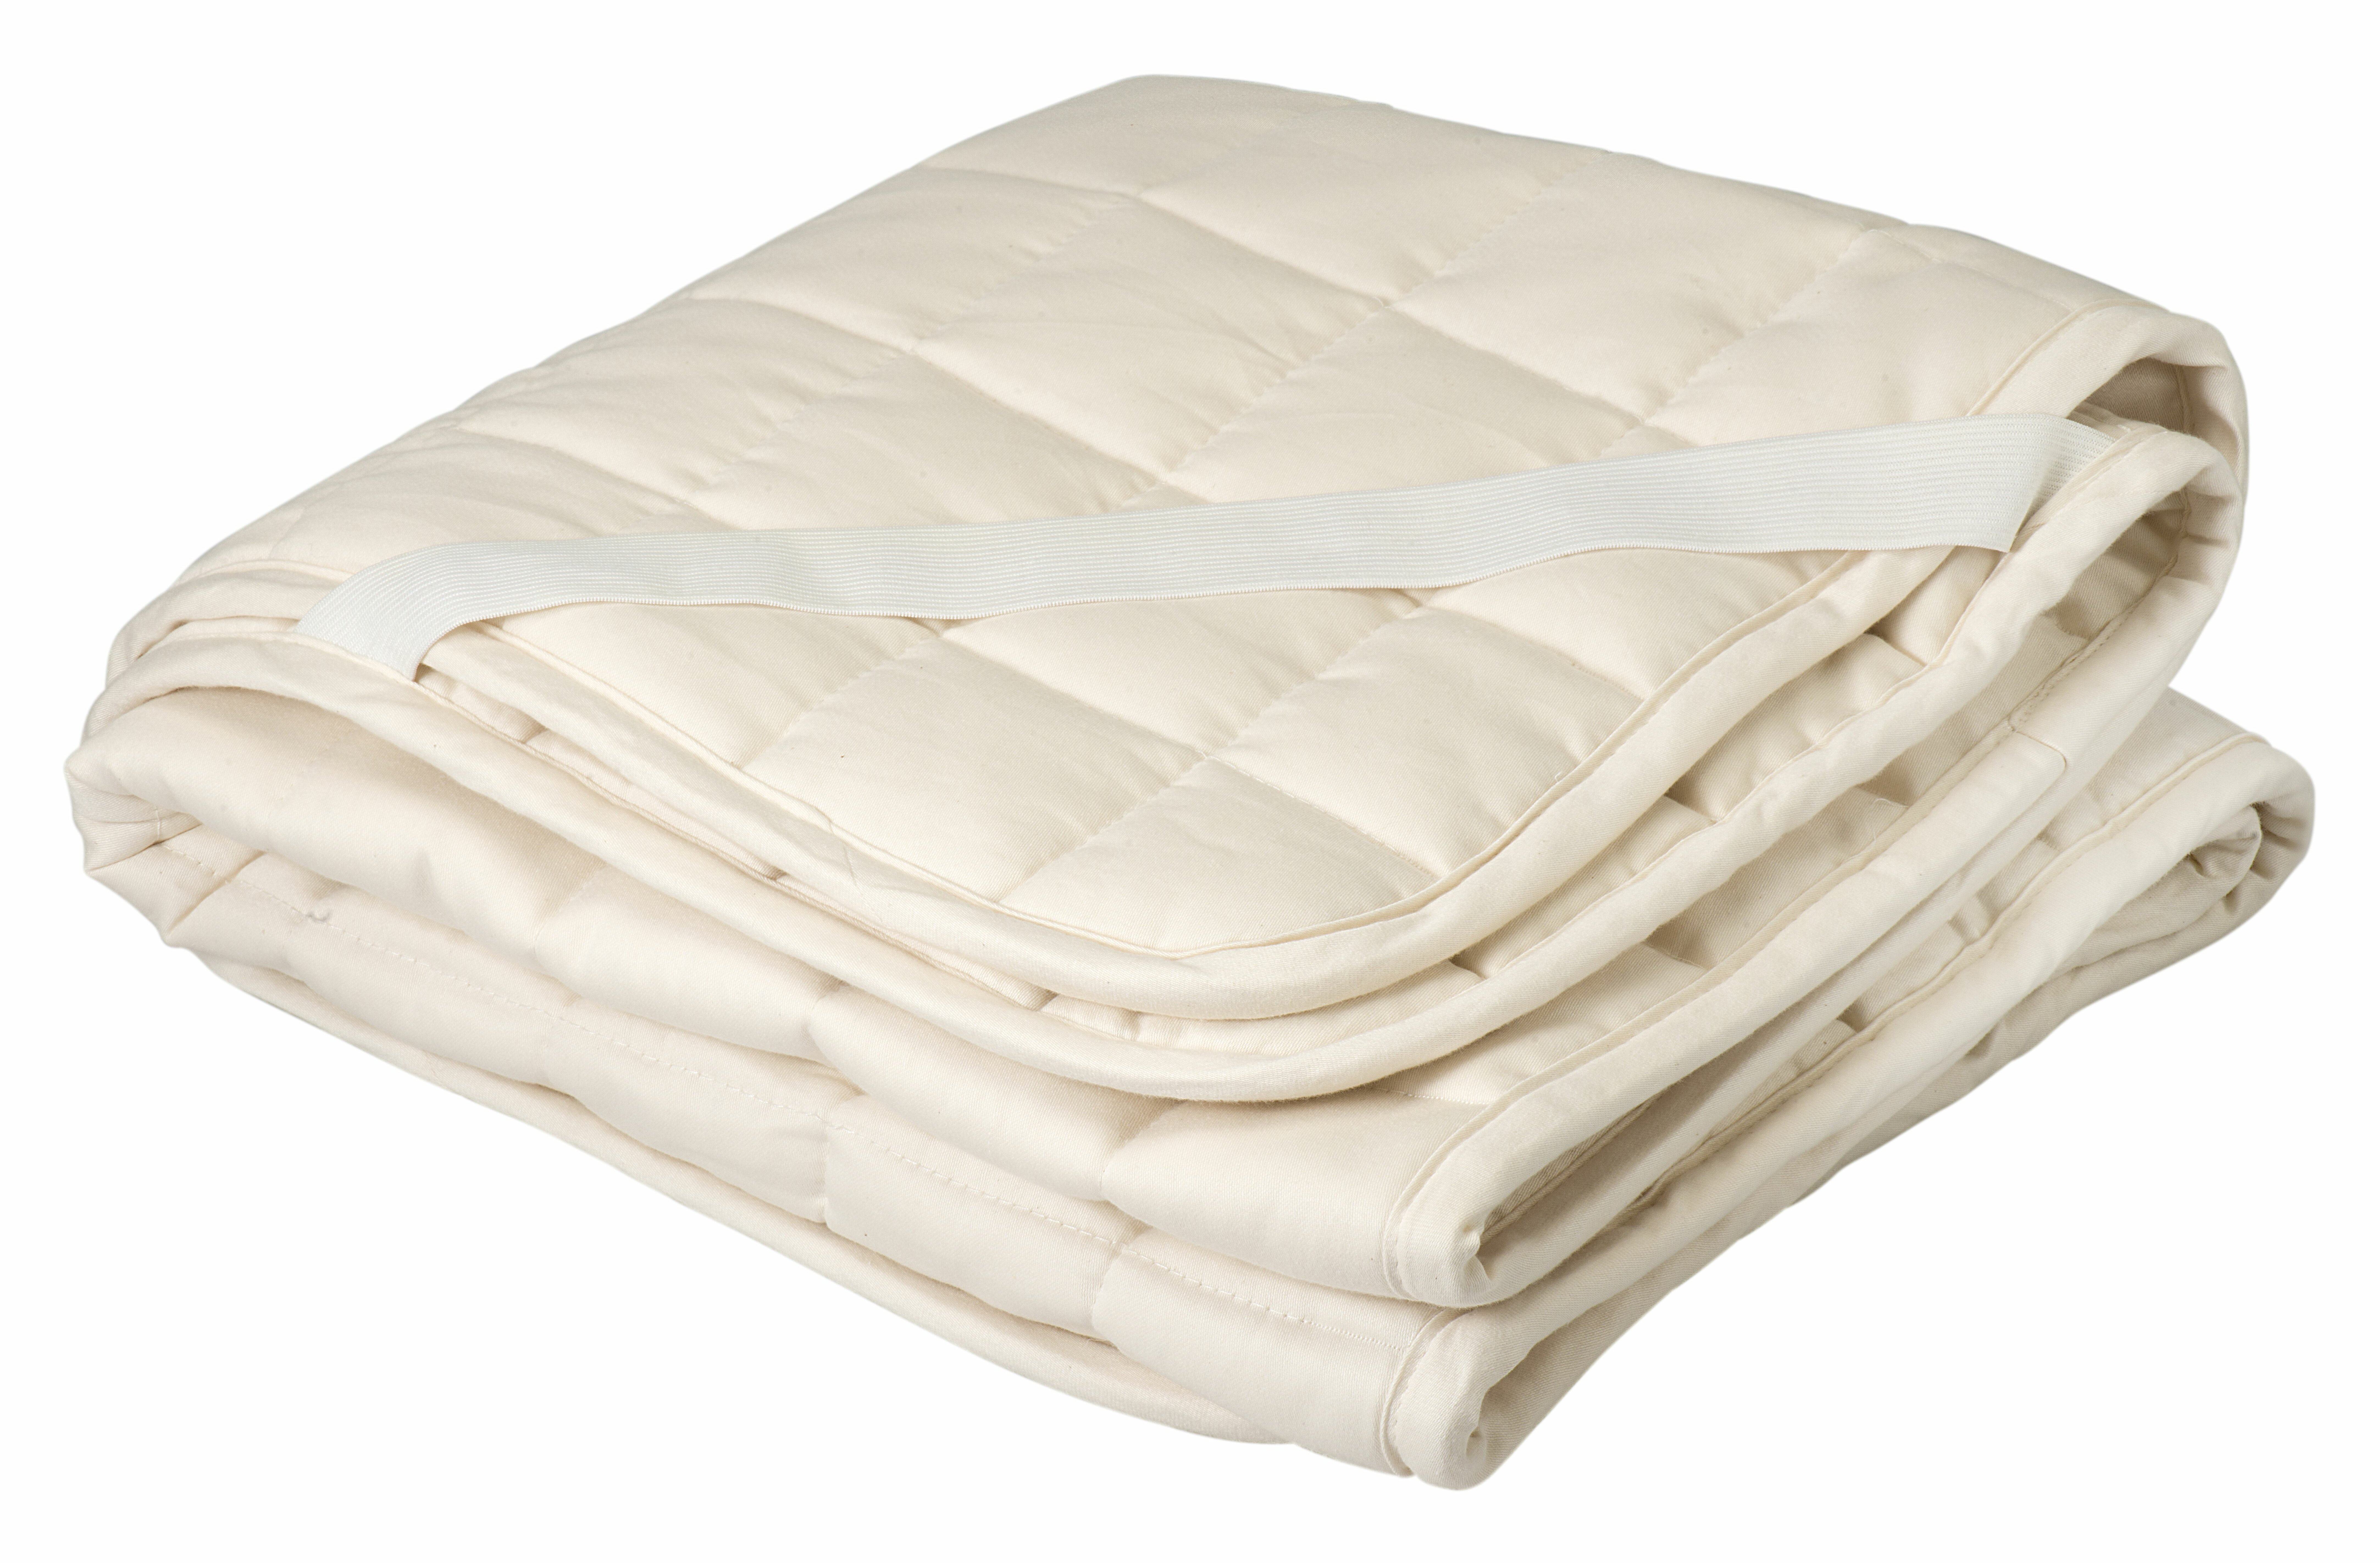 wool crib mattress pad